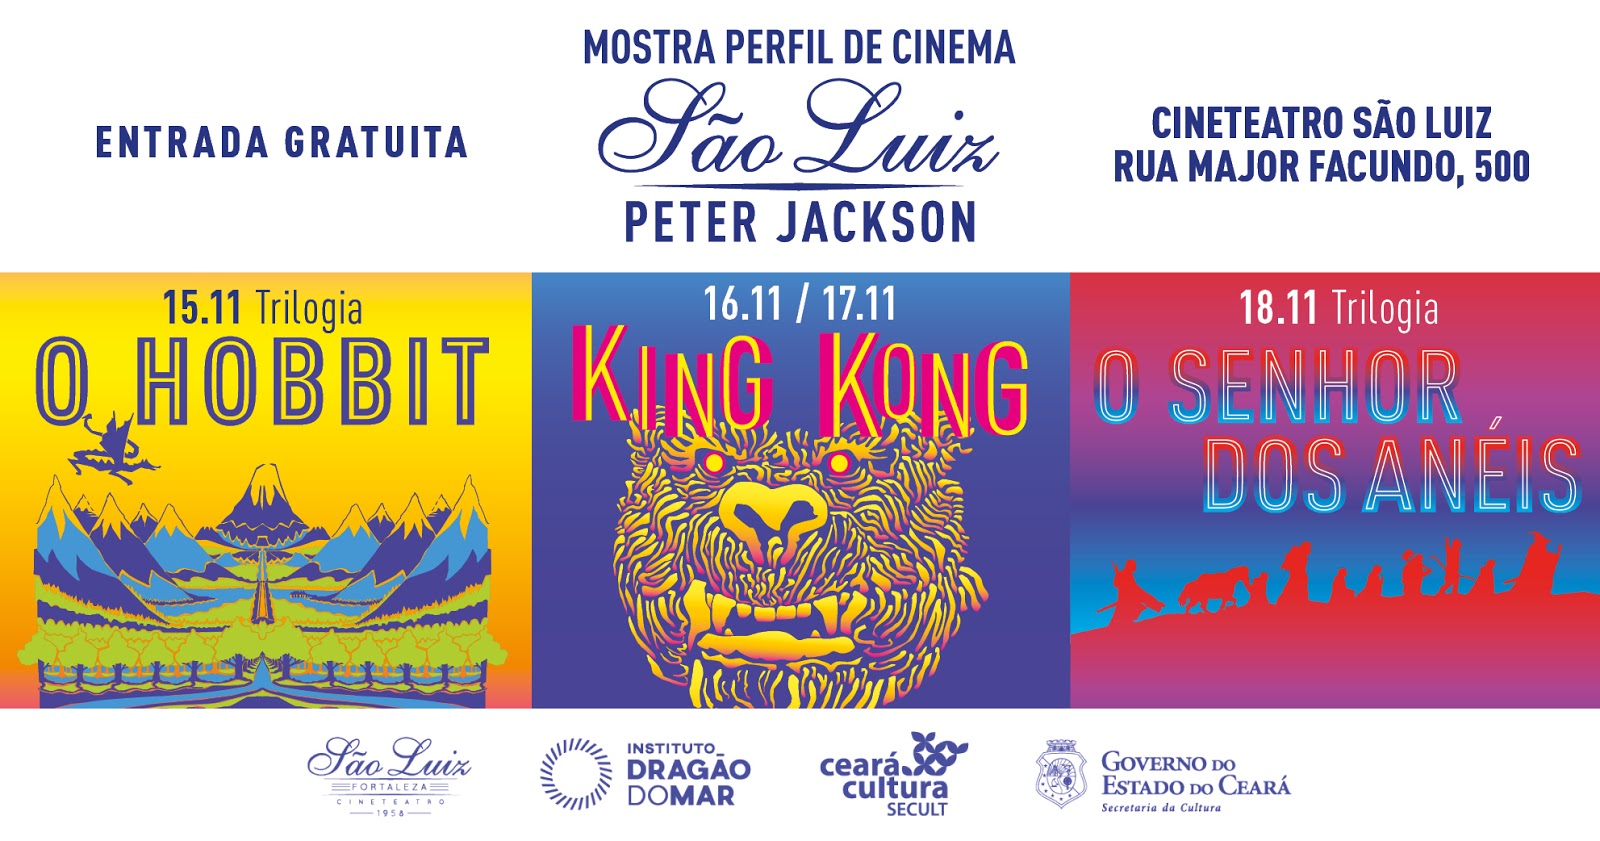 Cineclube Araucária comemora centenário de Mazzaropi com exibições